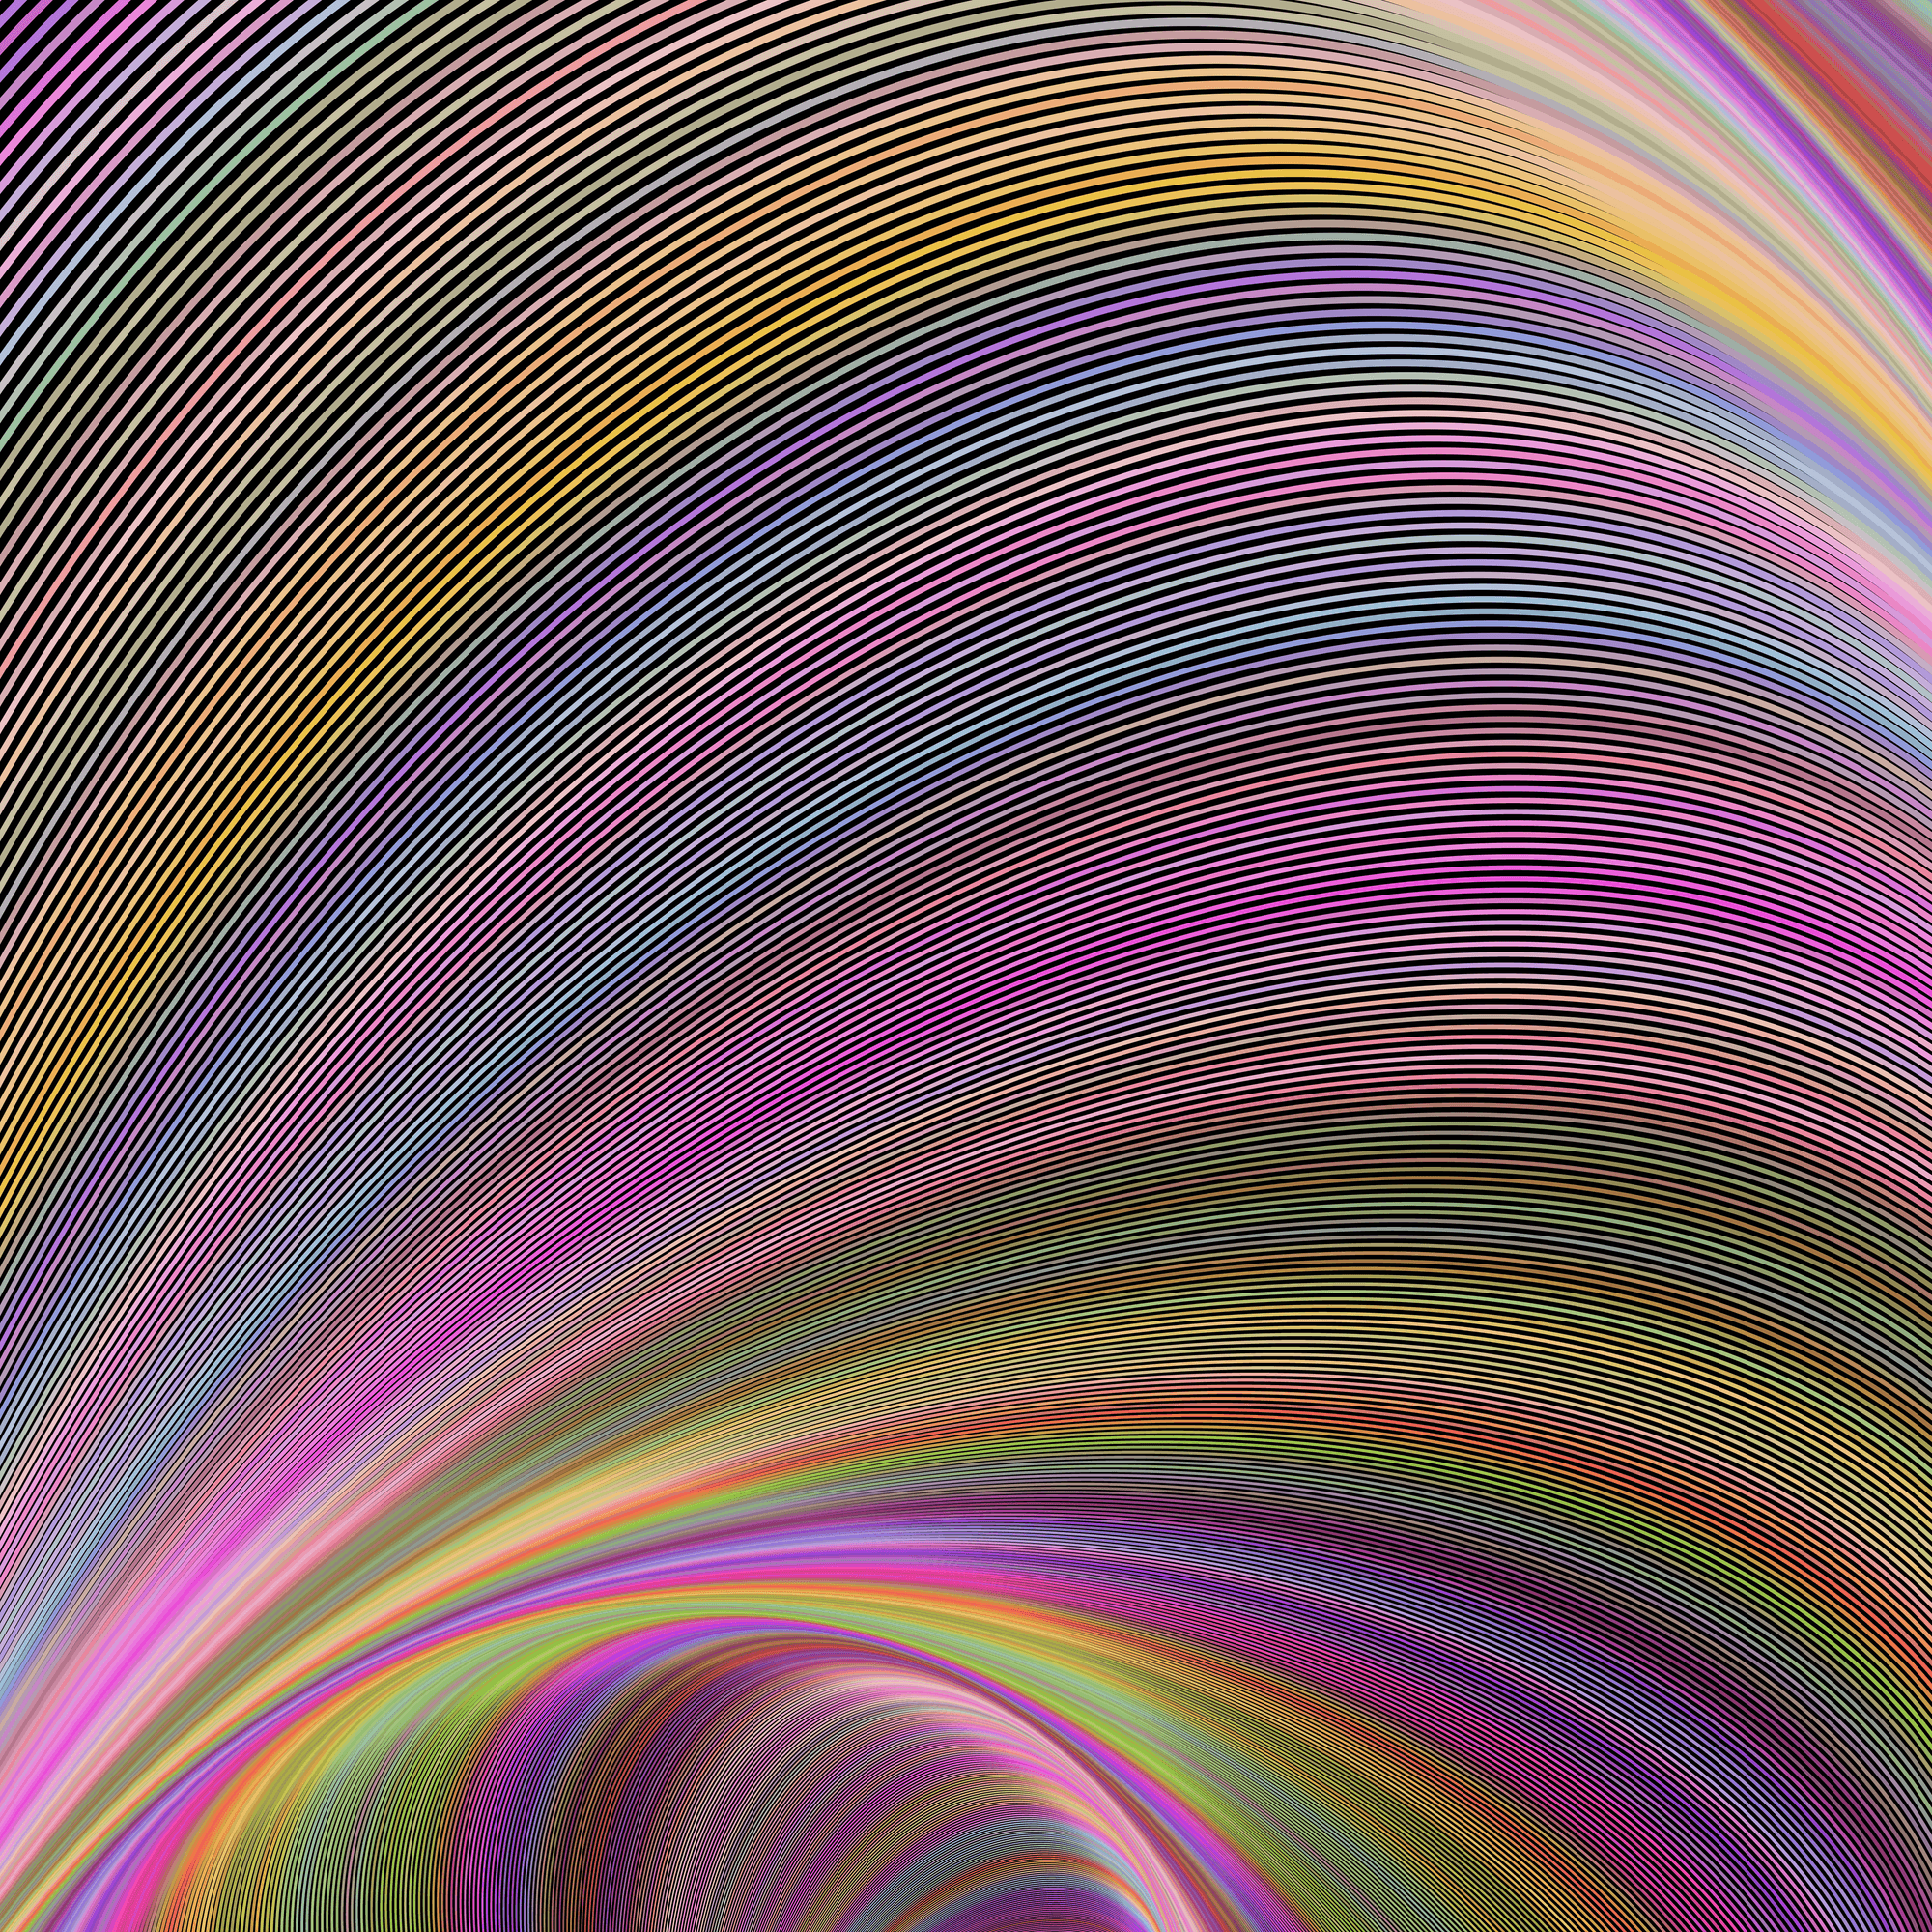 Curved Colorful Magic #77 - Curved Colorful Magic by David Zydd | OpenSea